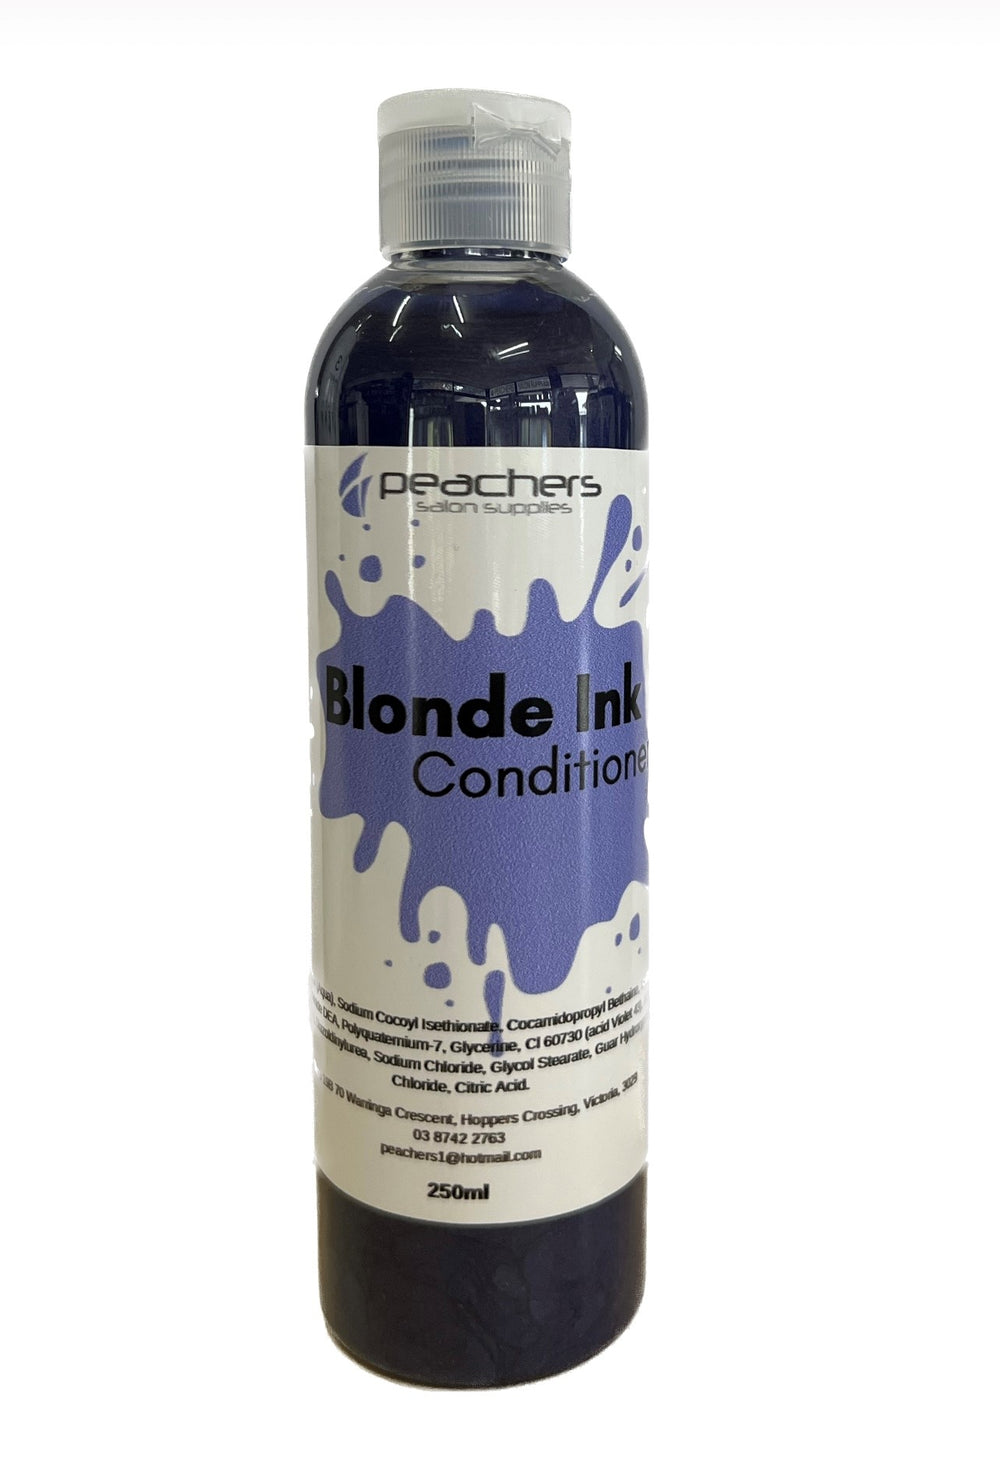 Peachers Blonde Ink conditioner 250ml